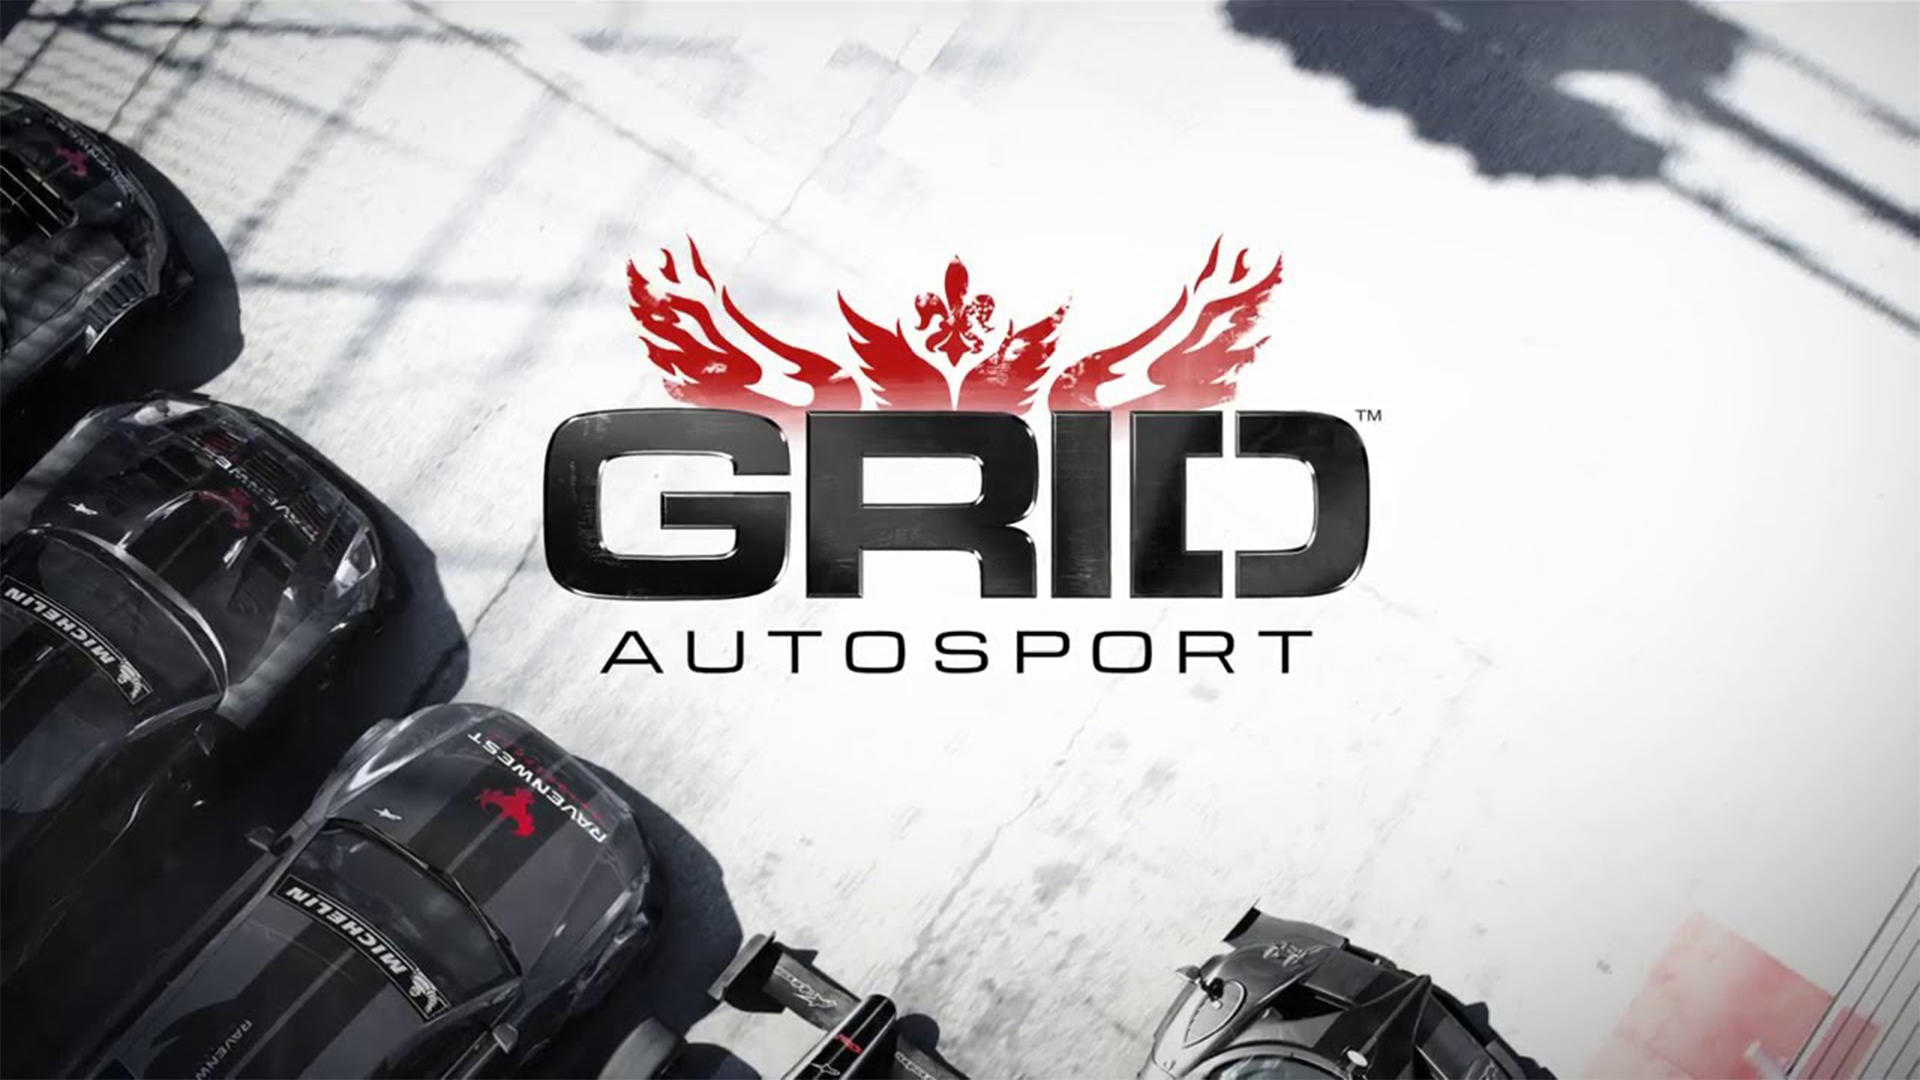 Banner of Edisi Tersuai Autosport GRID™ 1.10.1RC7